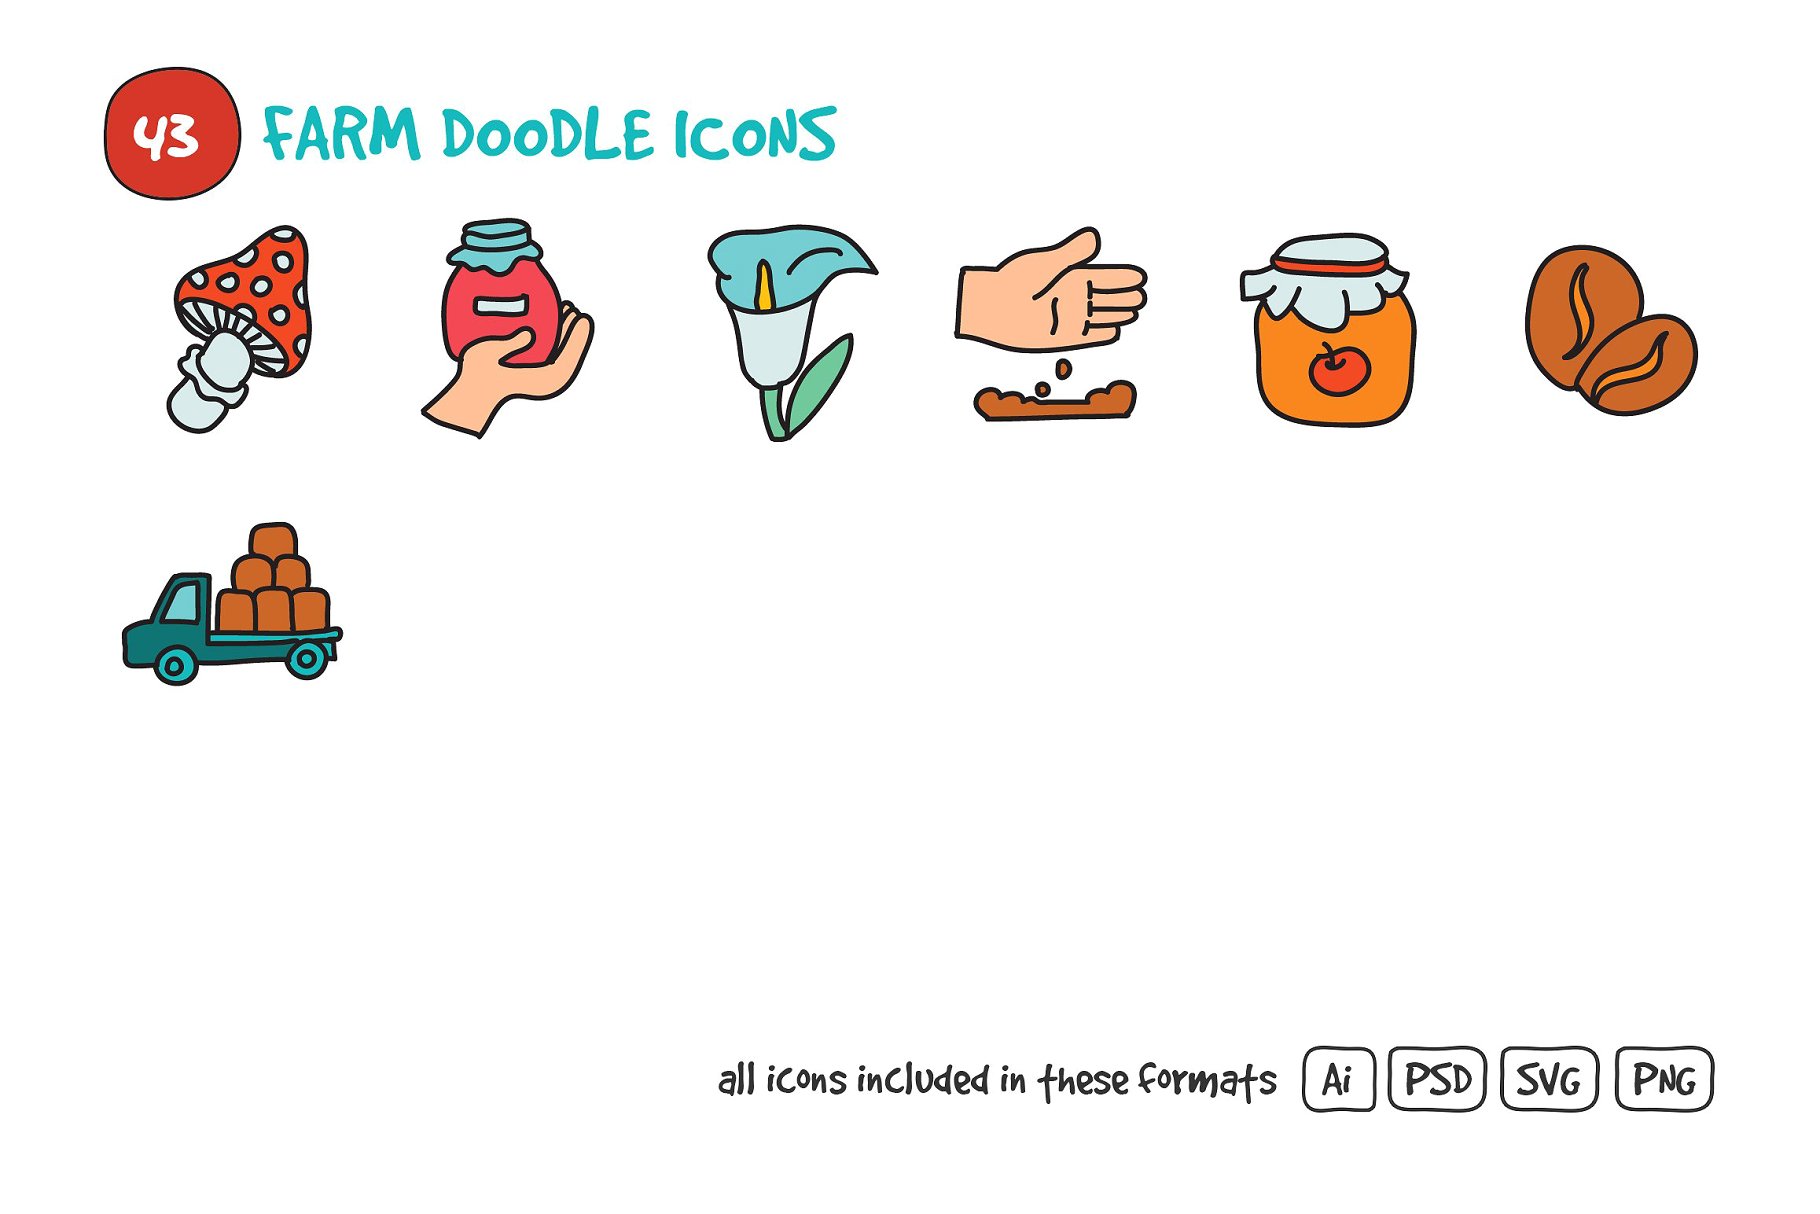 农场涂鸦图标素材集 Farm Doodle Icons Set设计素材模板